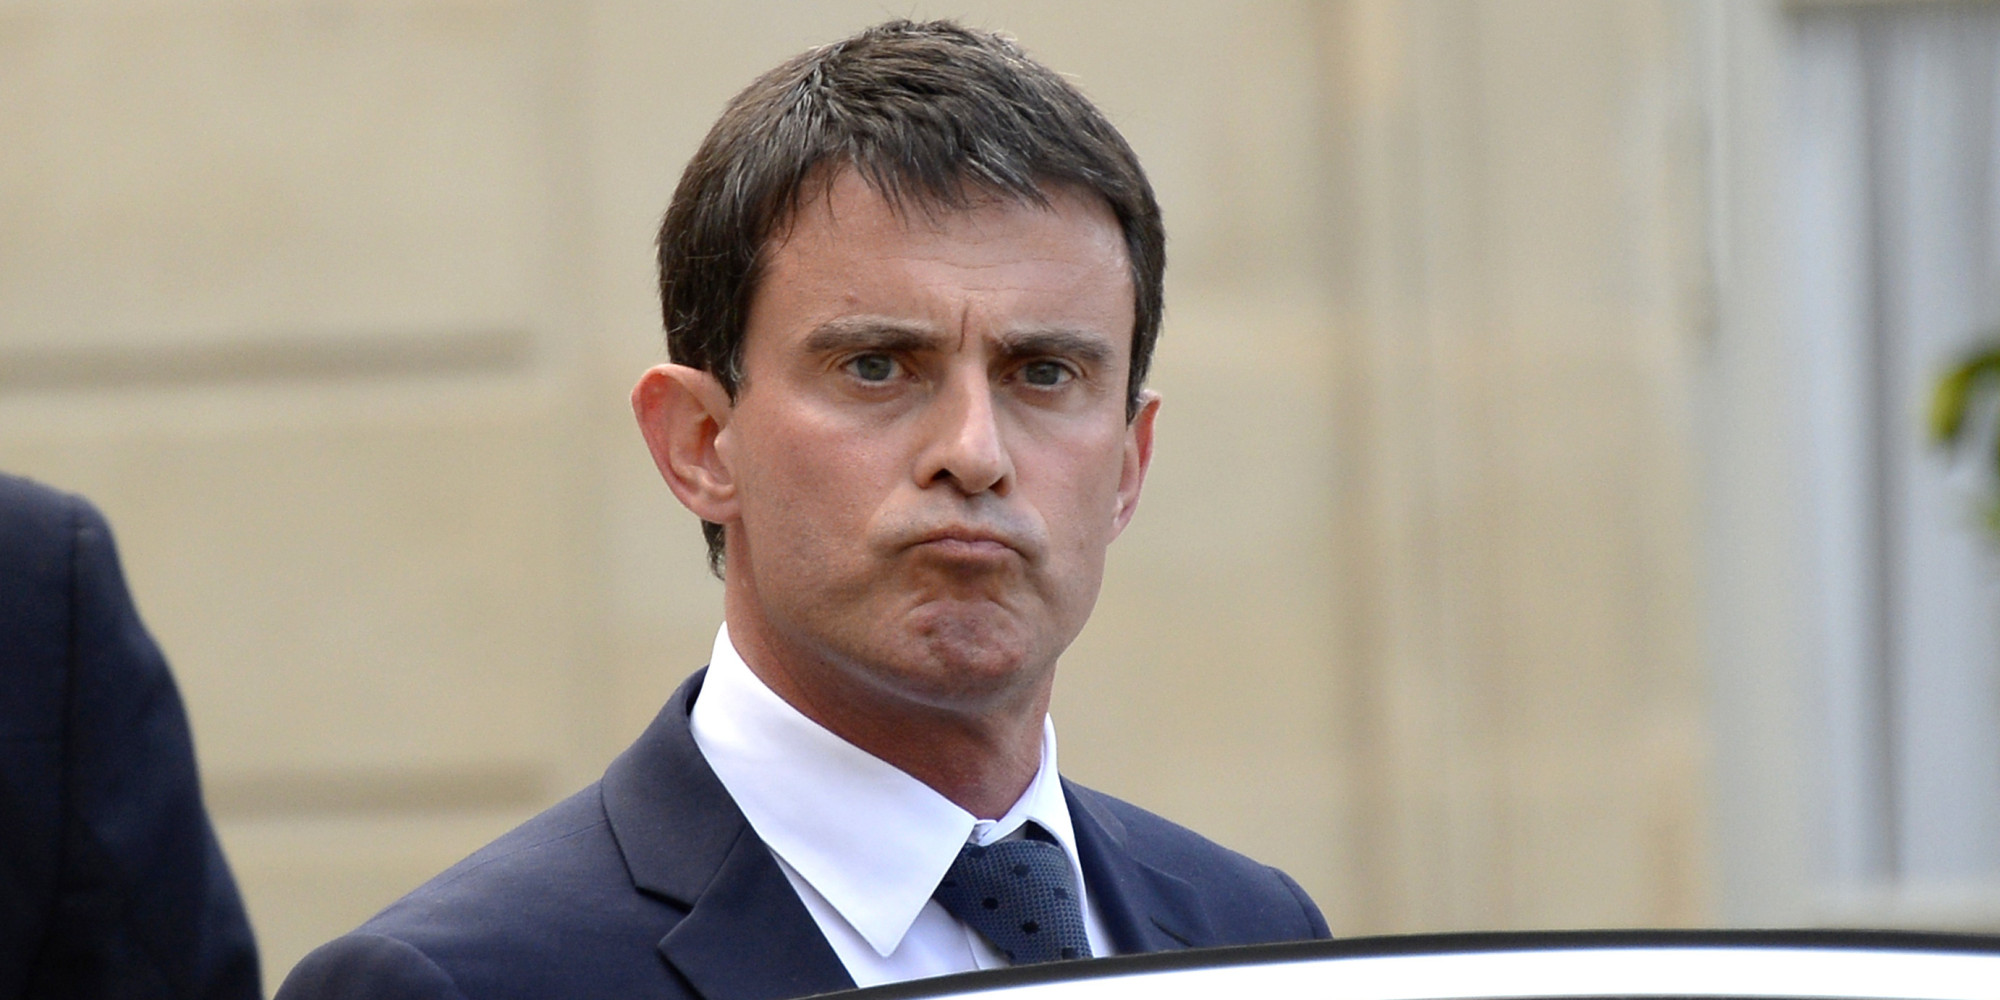 Manuel Valls francia miniszterelnök